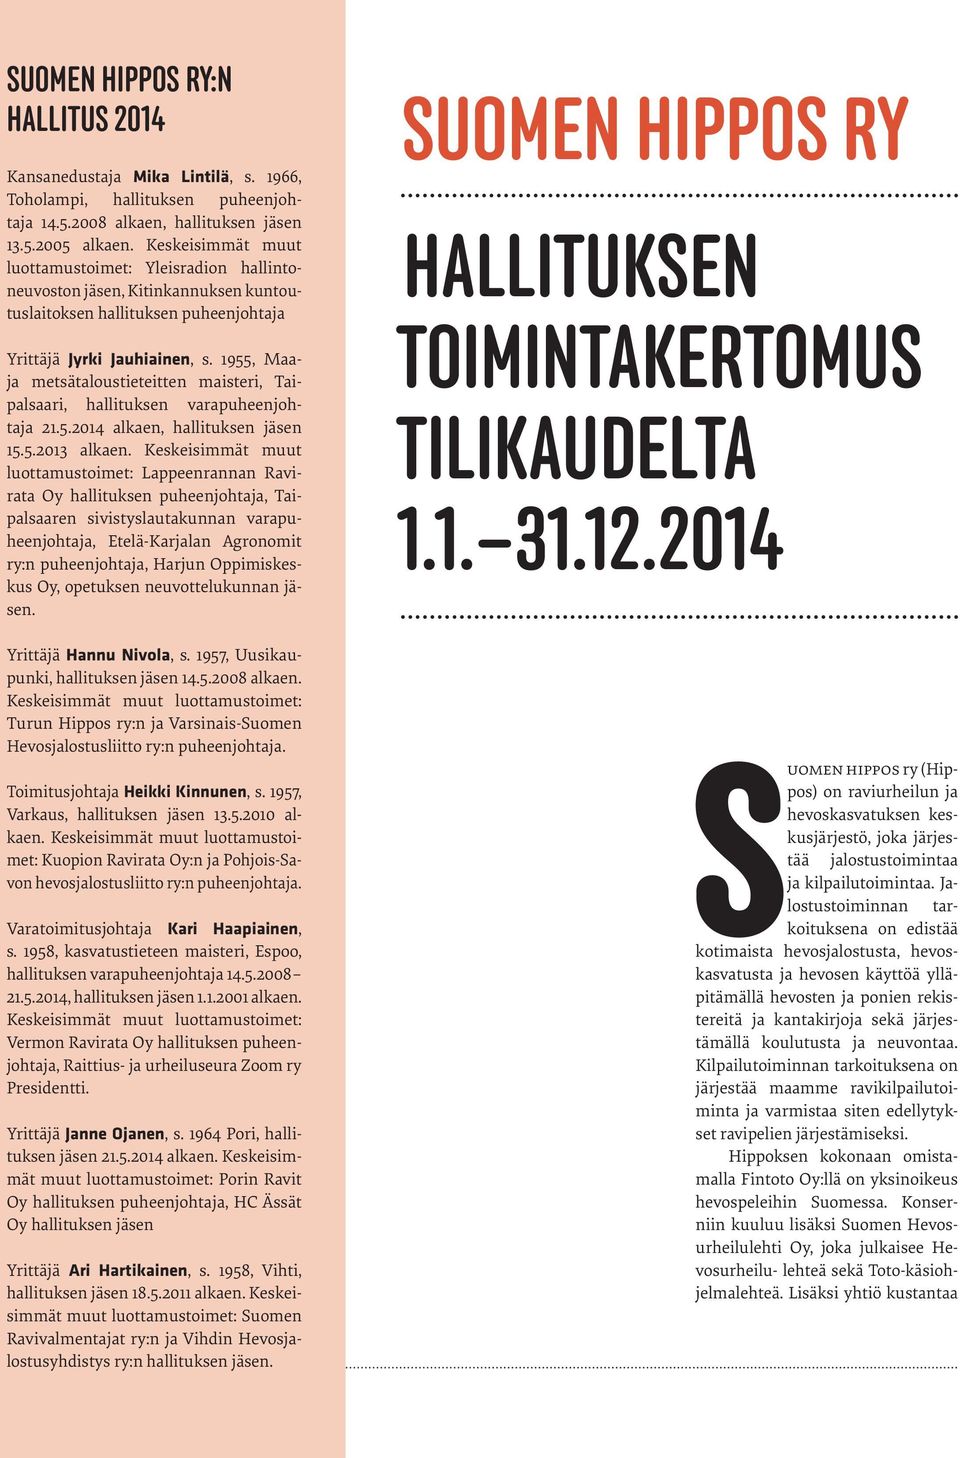 1955, Maaja metsätaloustieteitten maisteri, Taipalsaari, hallituksen varapuheenjohtaja 21.5.2014 alkaen, hallituksen jäsen 15.5.2013 alkaen.